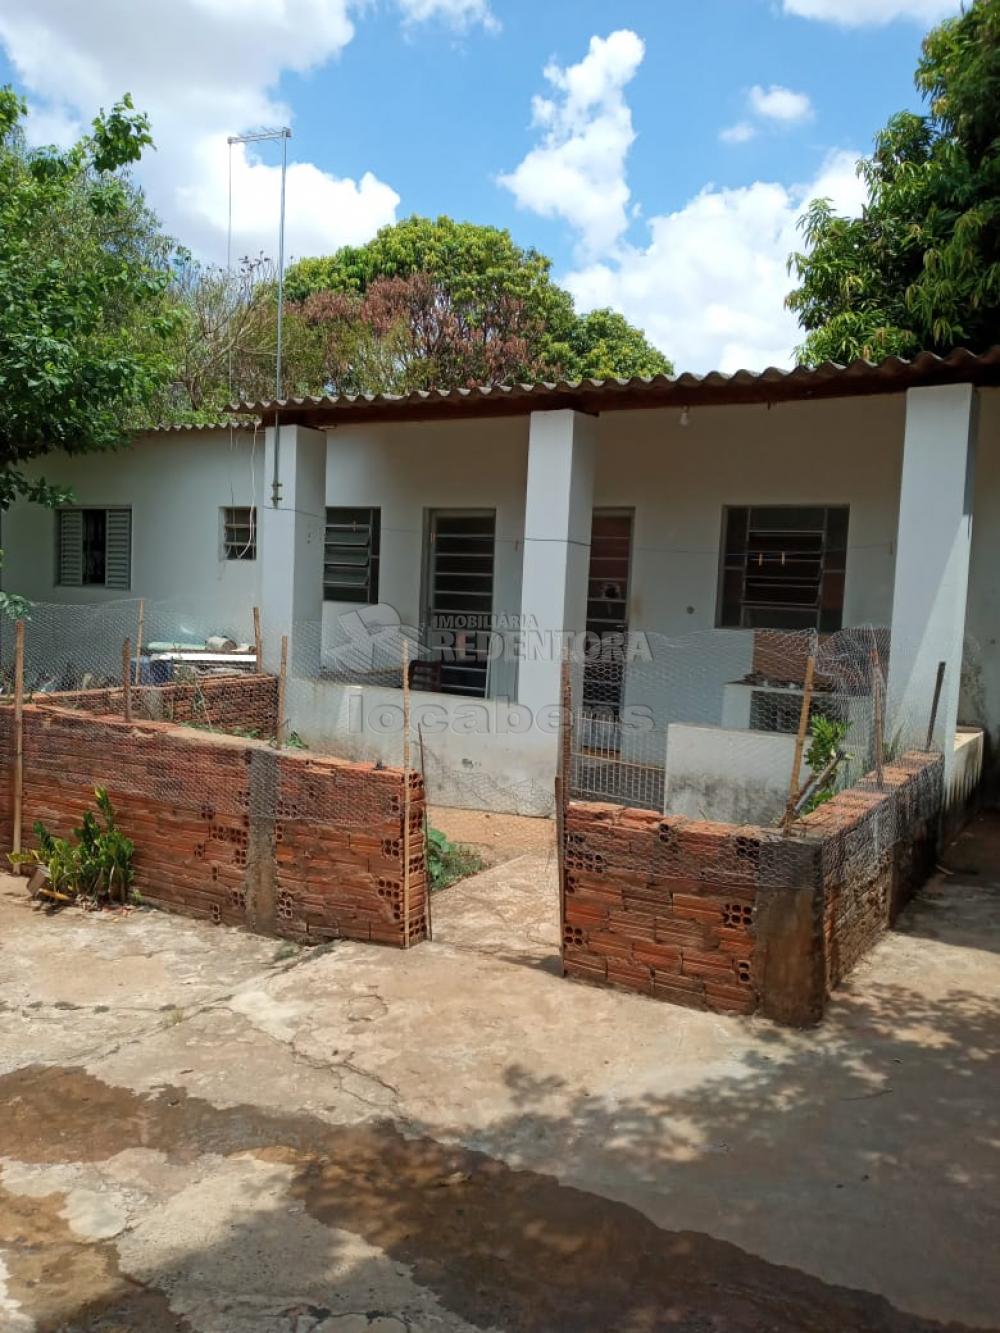 Comprar Rural / Chácara em São José do Rio Preto R$ 800.000,00 - Foto 23